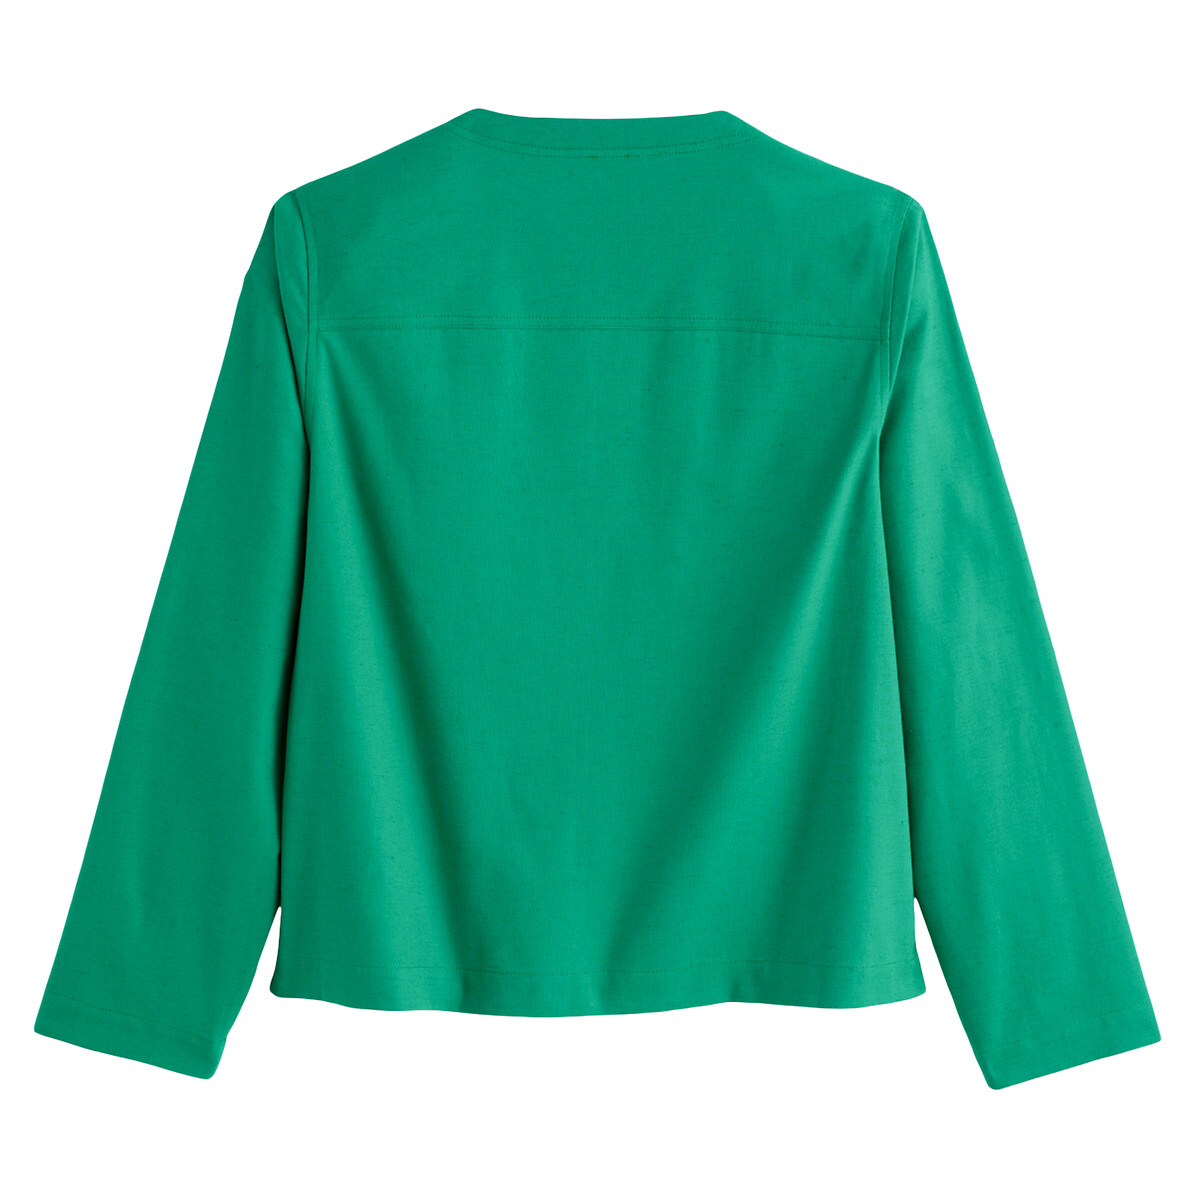 Блузка SIXSOEURS X LA REDOUTE Блузка С круглым воротником 42 (FR) - 48 (RUS) зеленый, размер 42 (FR) - 48 (RUS) Блузка С круглым воротником 42 (FR) - 48 (RUS) зеленый - фото 4